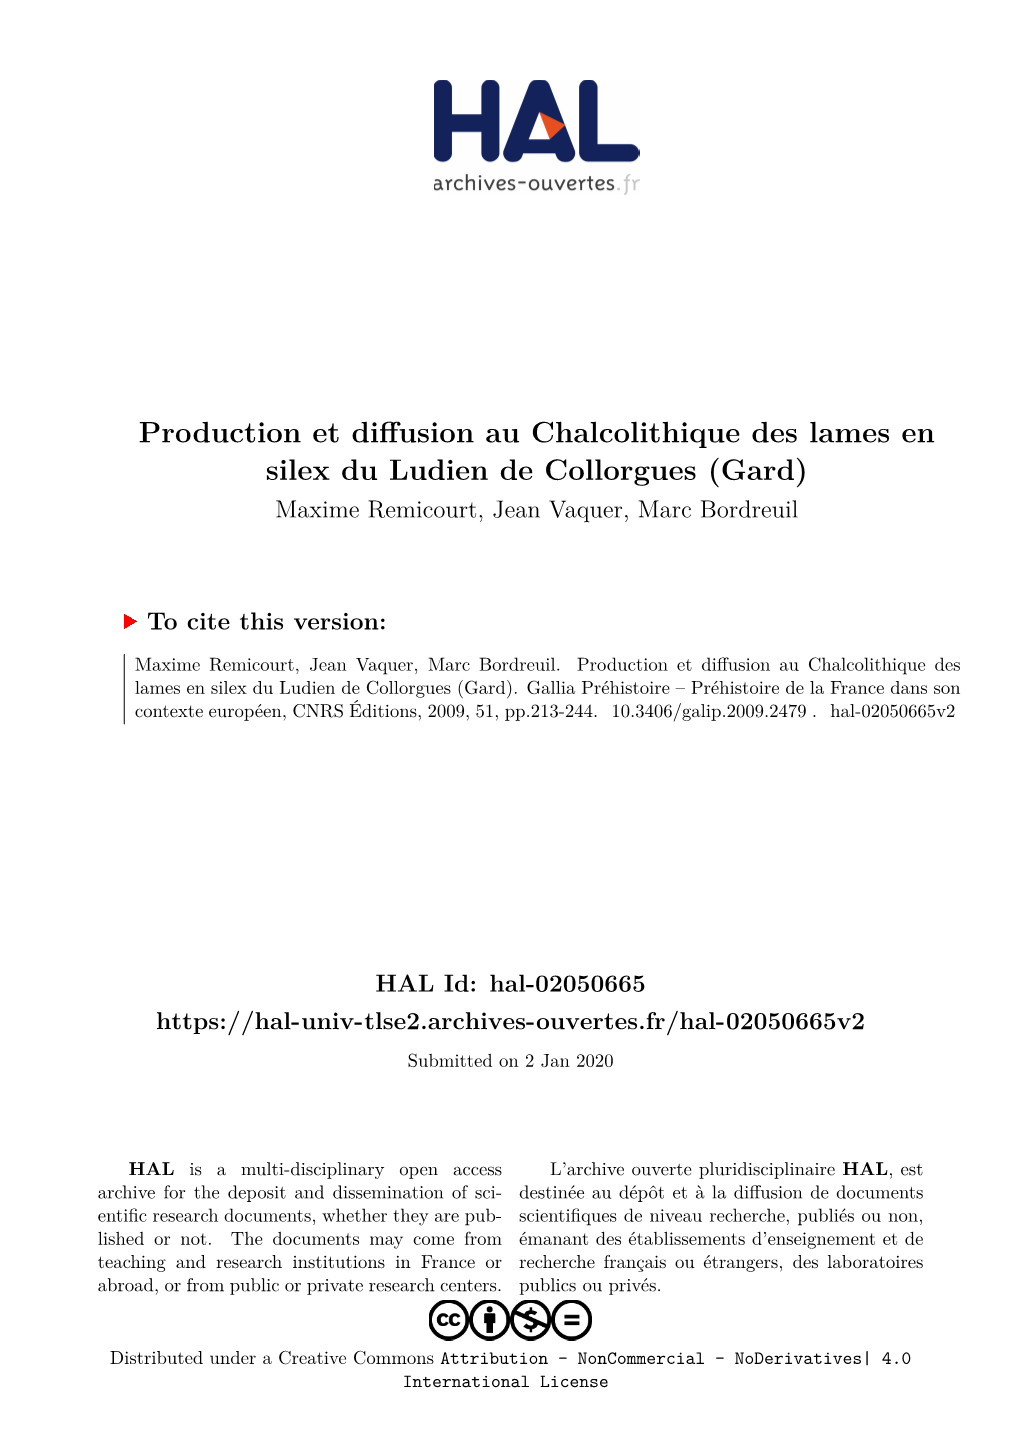 Production Et Diffusion Au Chalcolithique Des Lames En Silex Du Ludien De Collorgues (Gard) Maxime Remicourt, Jean Vaquer, Marc Bordreuil